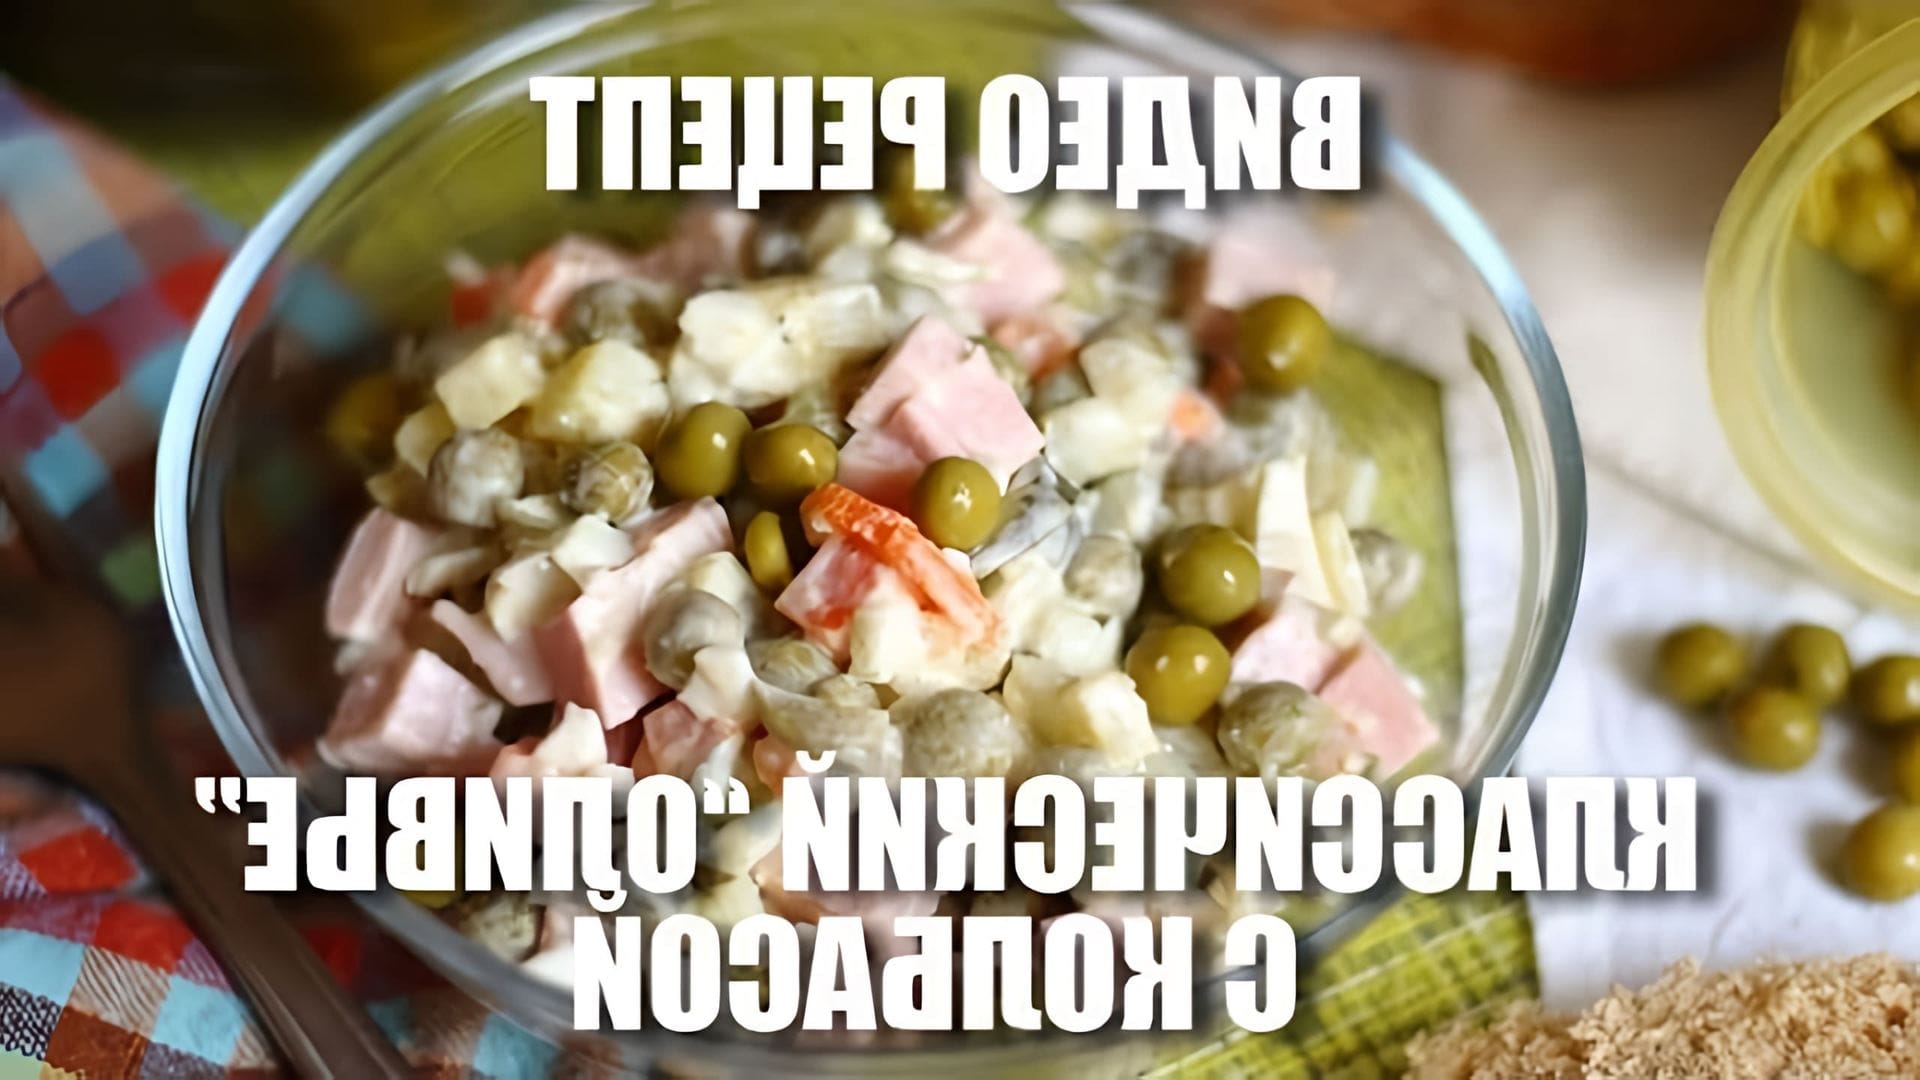 В этом видео демонстрируется рецепт классического салата "Оливье" с колбасой